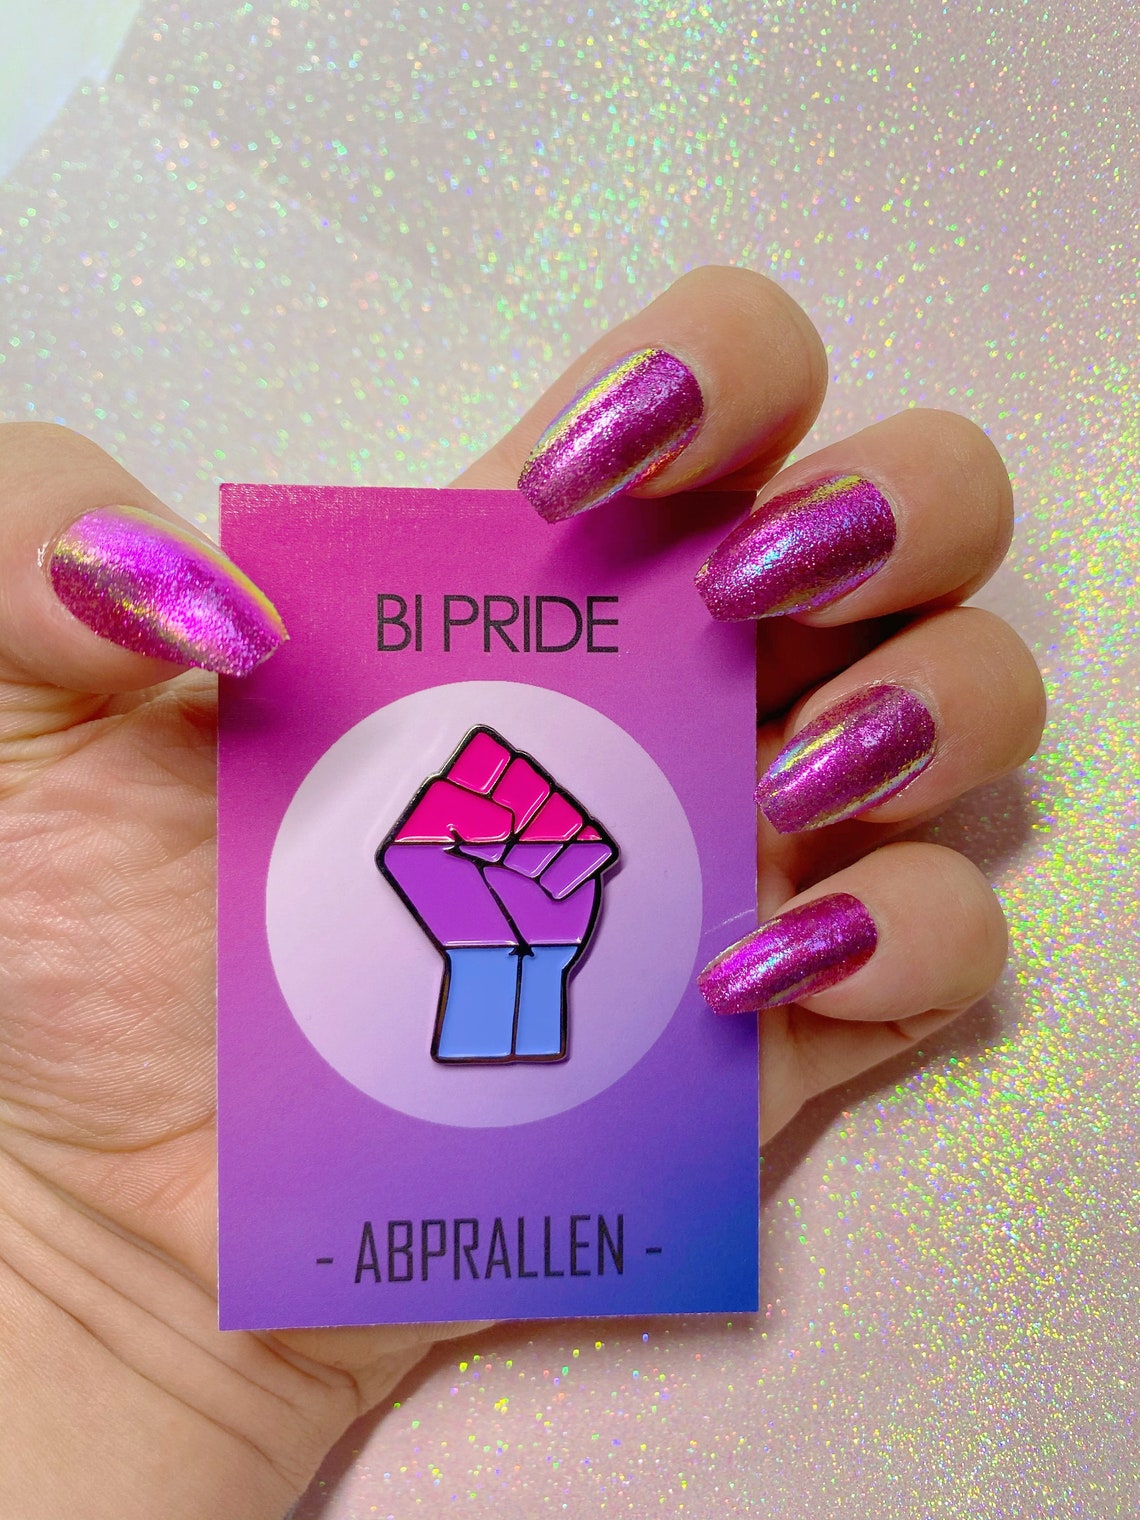 Bisexual Pride Enamel Pin Etsy